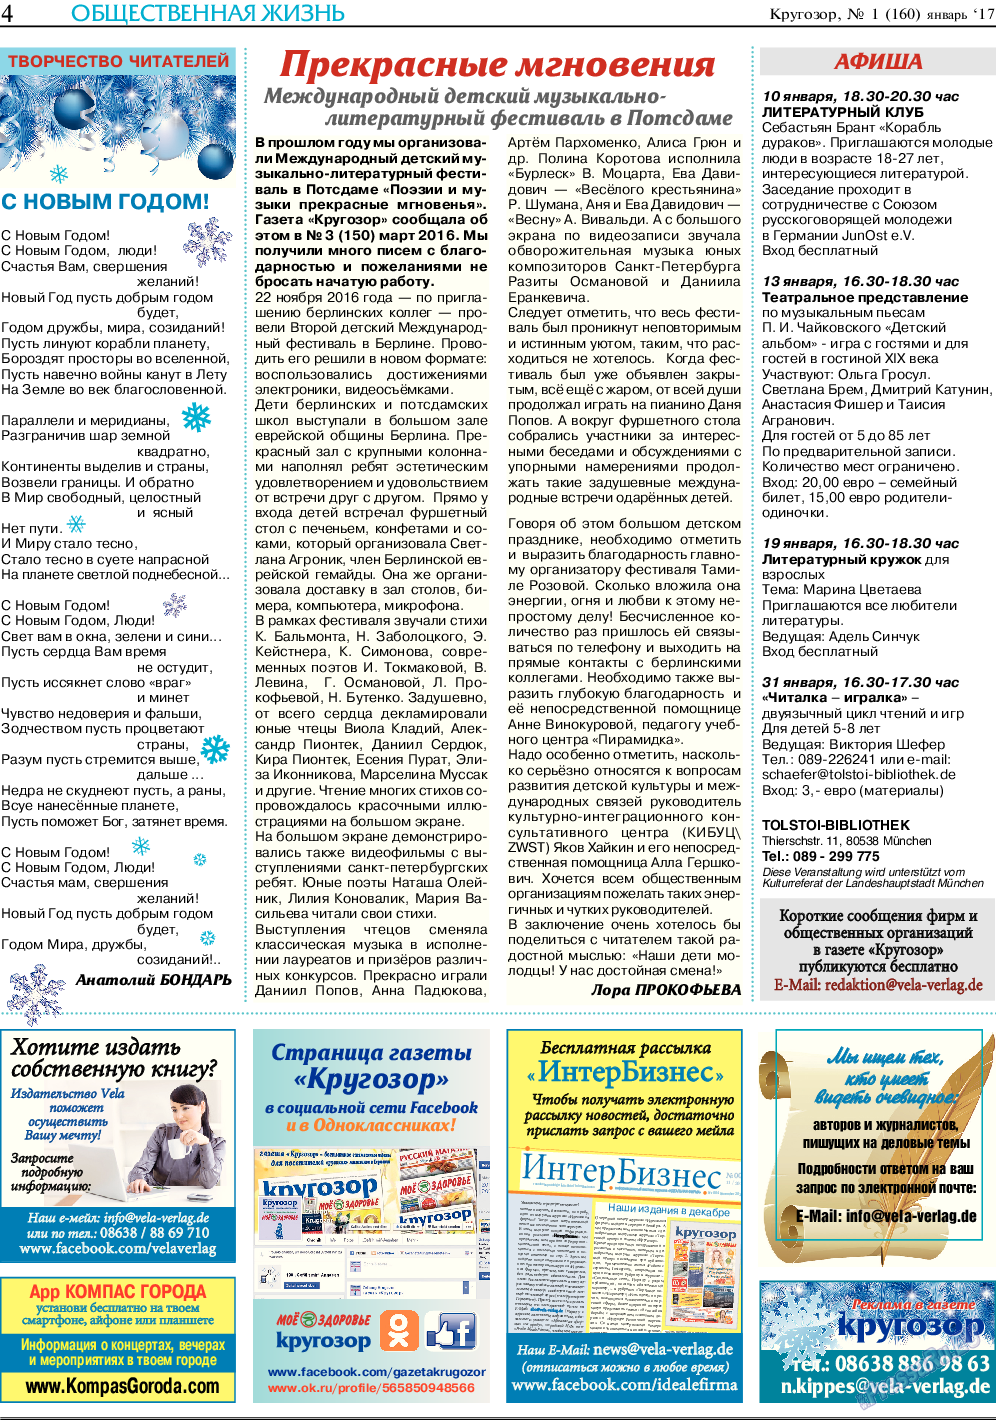 Кругозор, газета. 2017 №1 стр.4